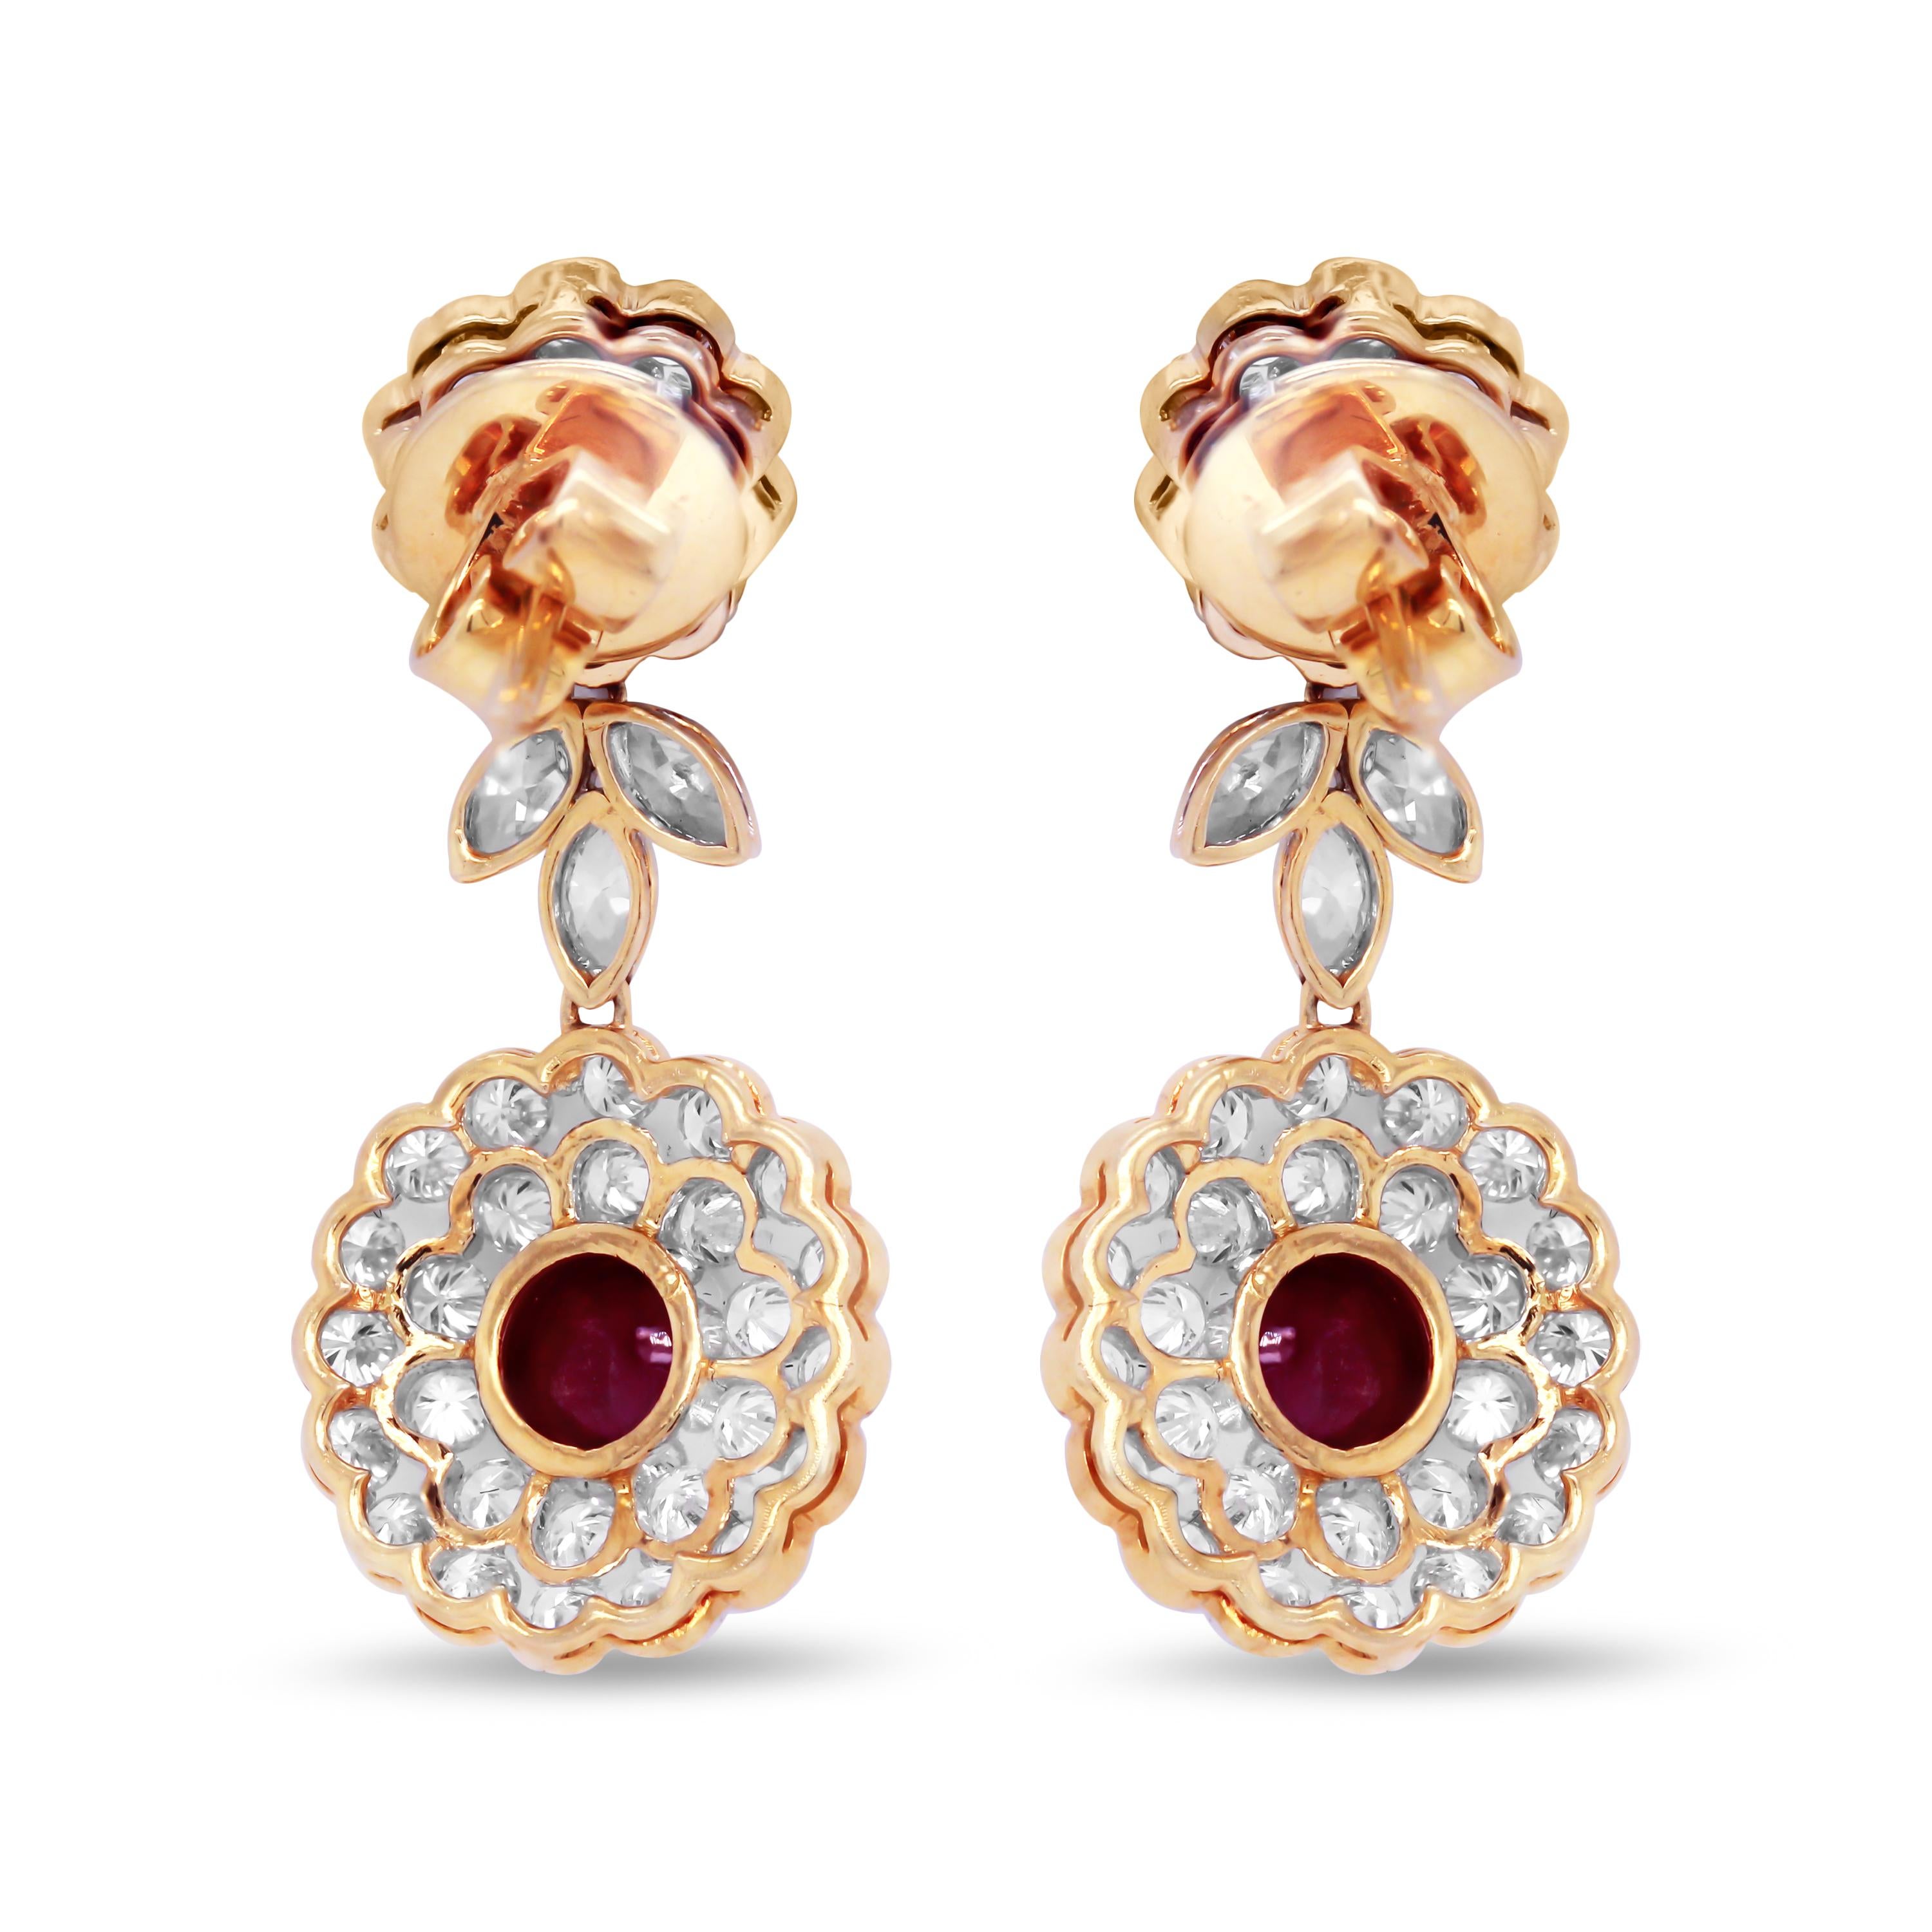 zweifarbige Ohrringe aus 18K Weiß- und Gelbgold und Diamanten mit Cabochon-Rubinen

Diese einzigartigen Ohrringe sind ein wahres Schmuckstück mit wirklich hochwertigen Rubinen, die in 18 Karat Gold gefasst und von Diamanten umgeben sind.

6.10 Karat